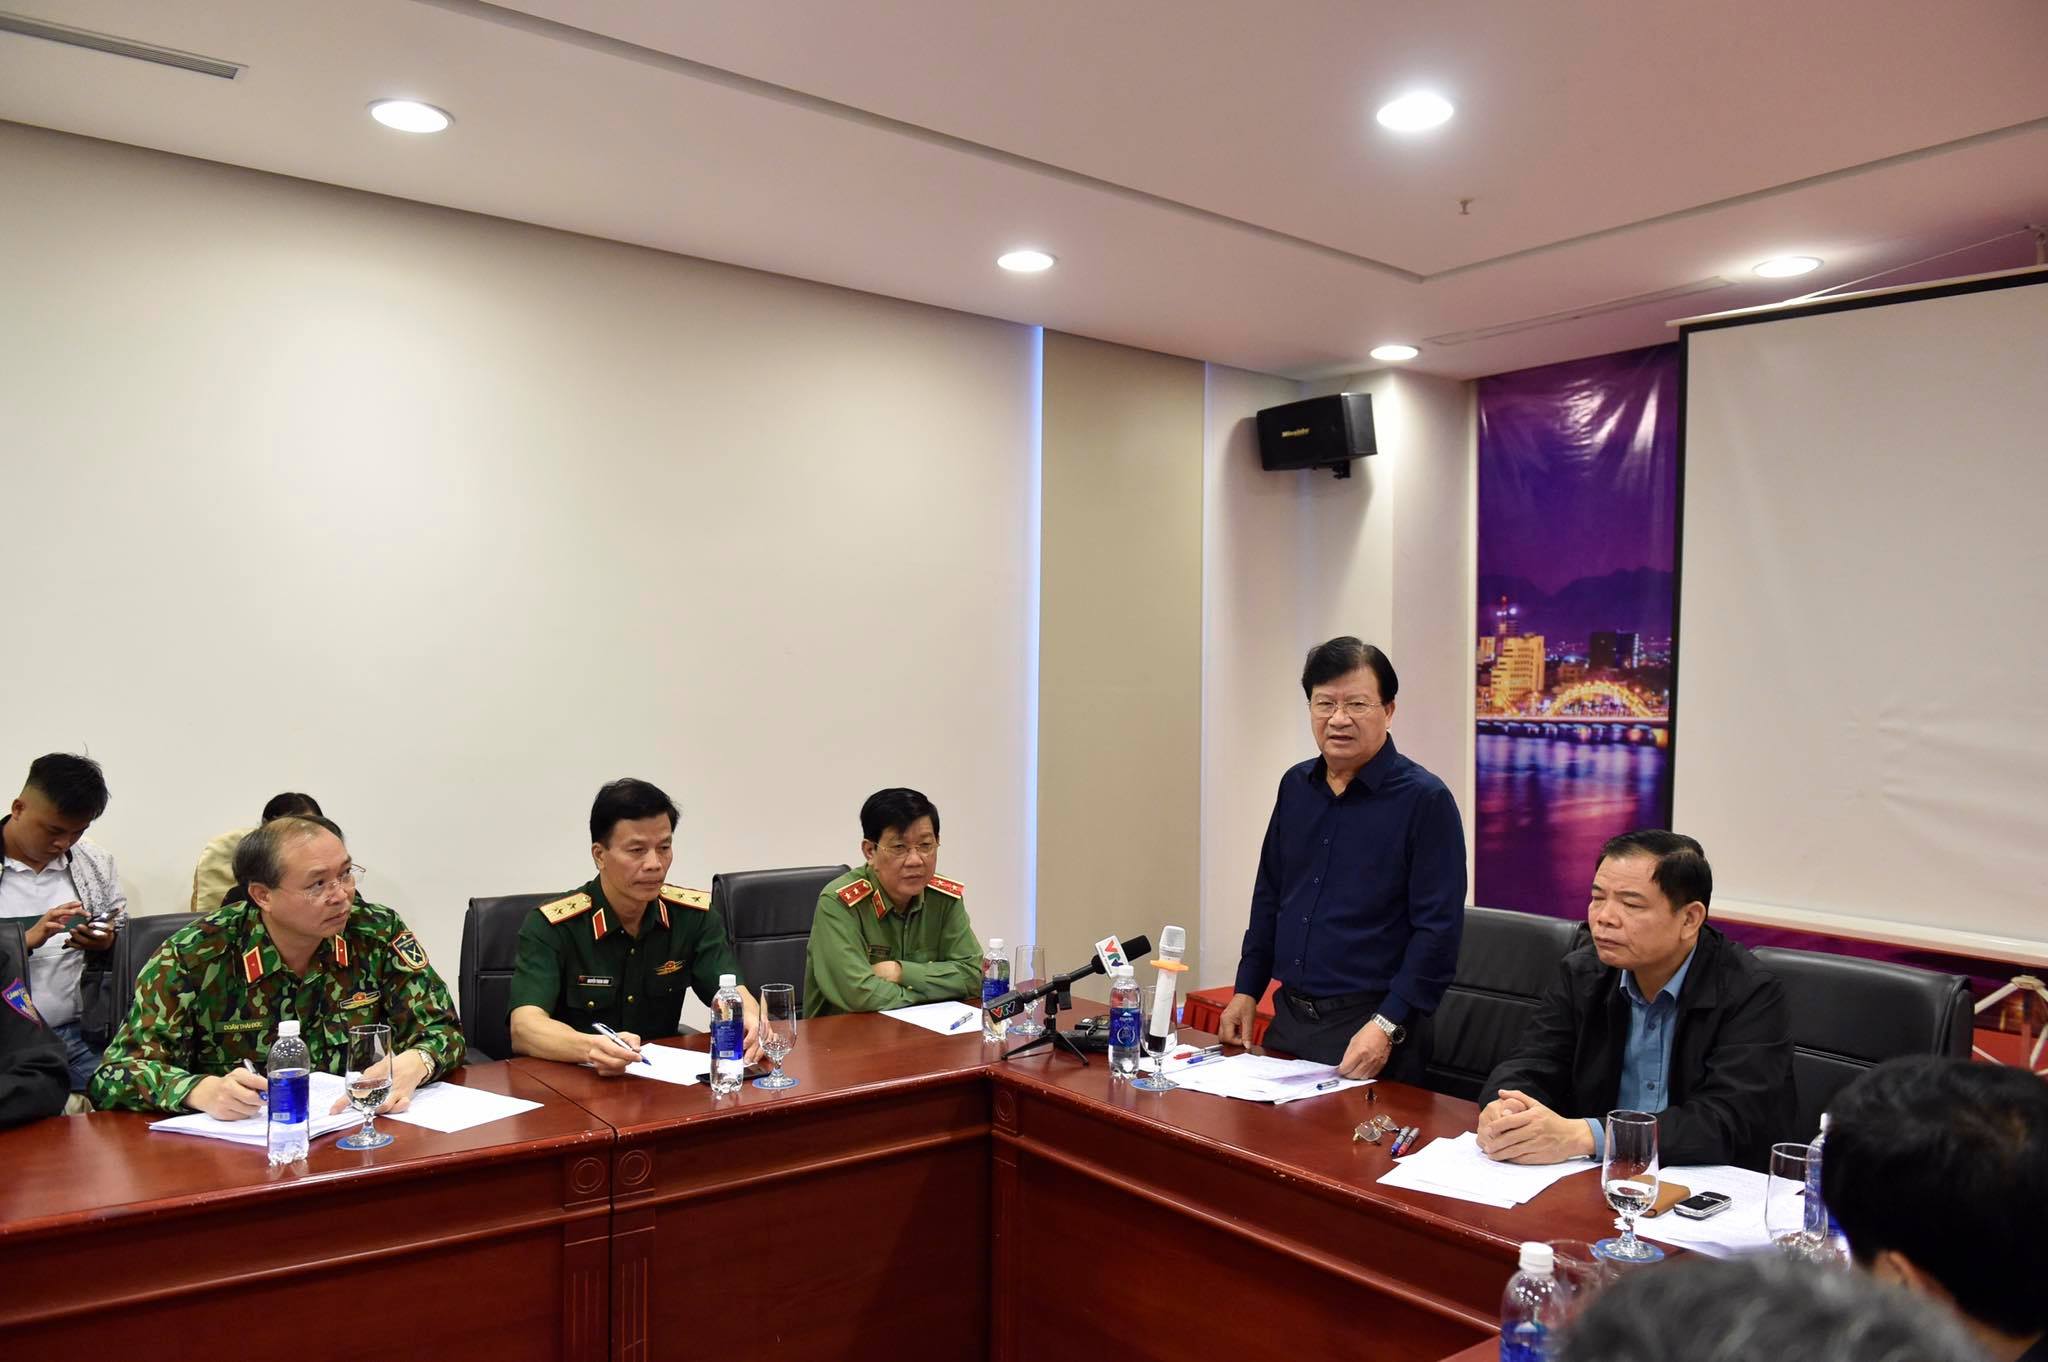 Phó Thủ tướng Trịnh Đình Dũng: Tình hình khẩn cấp, không quyết liệt ứng phó thì vô cùng nguy hiểm